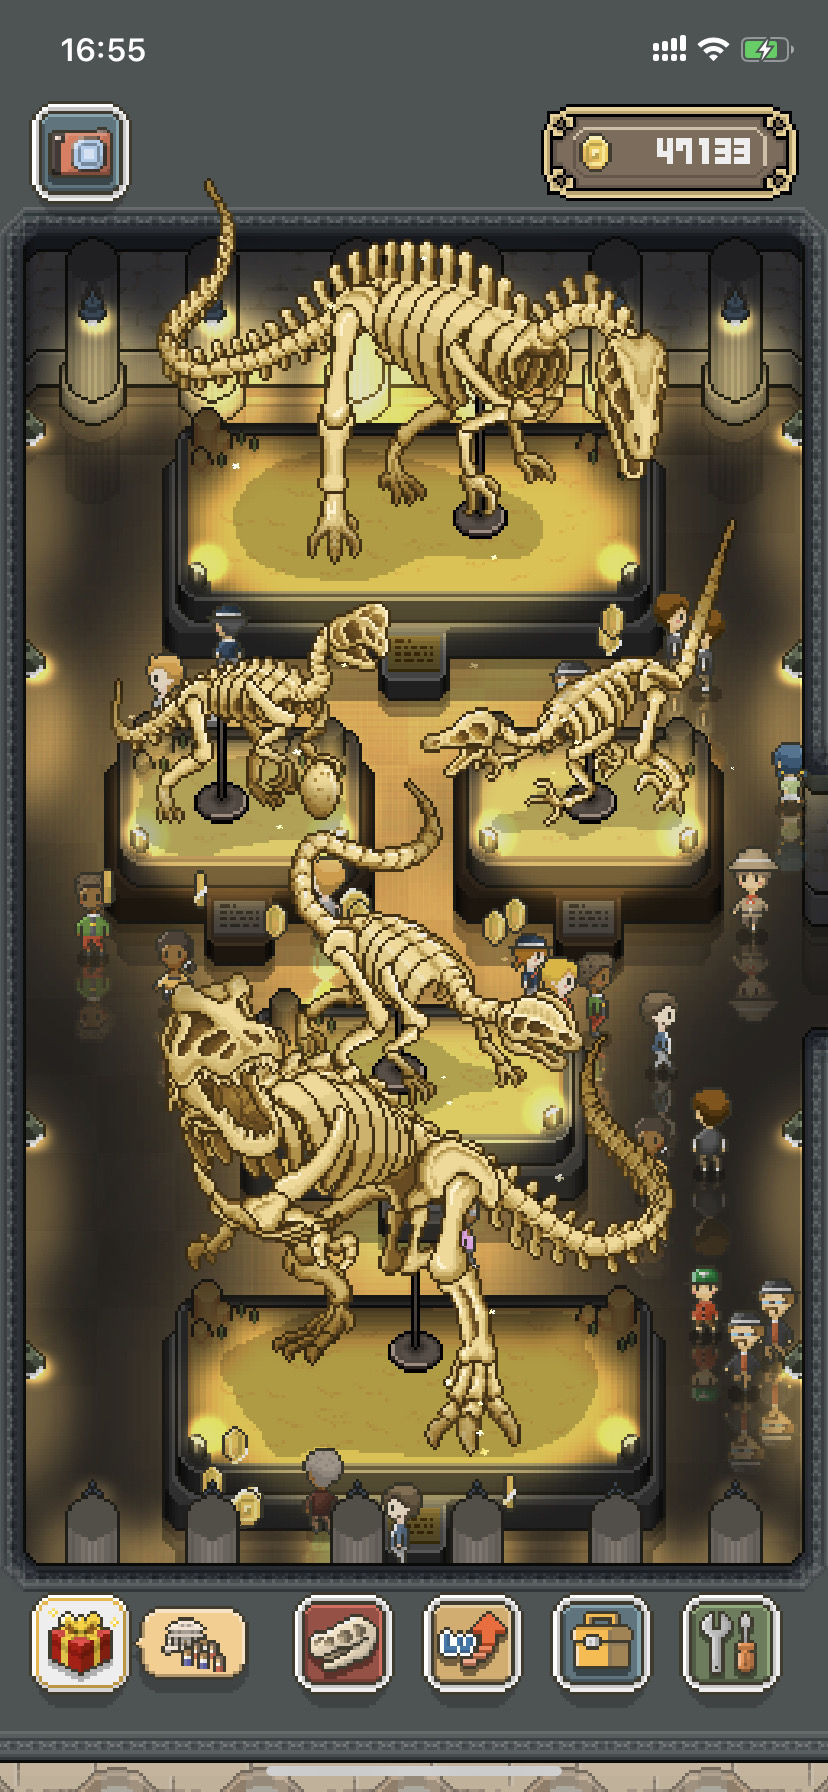 我的化石博物馆兽足龙图鉴 兽足龙特点说明